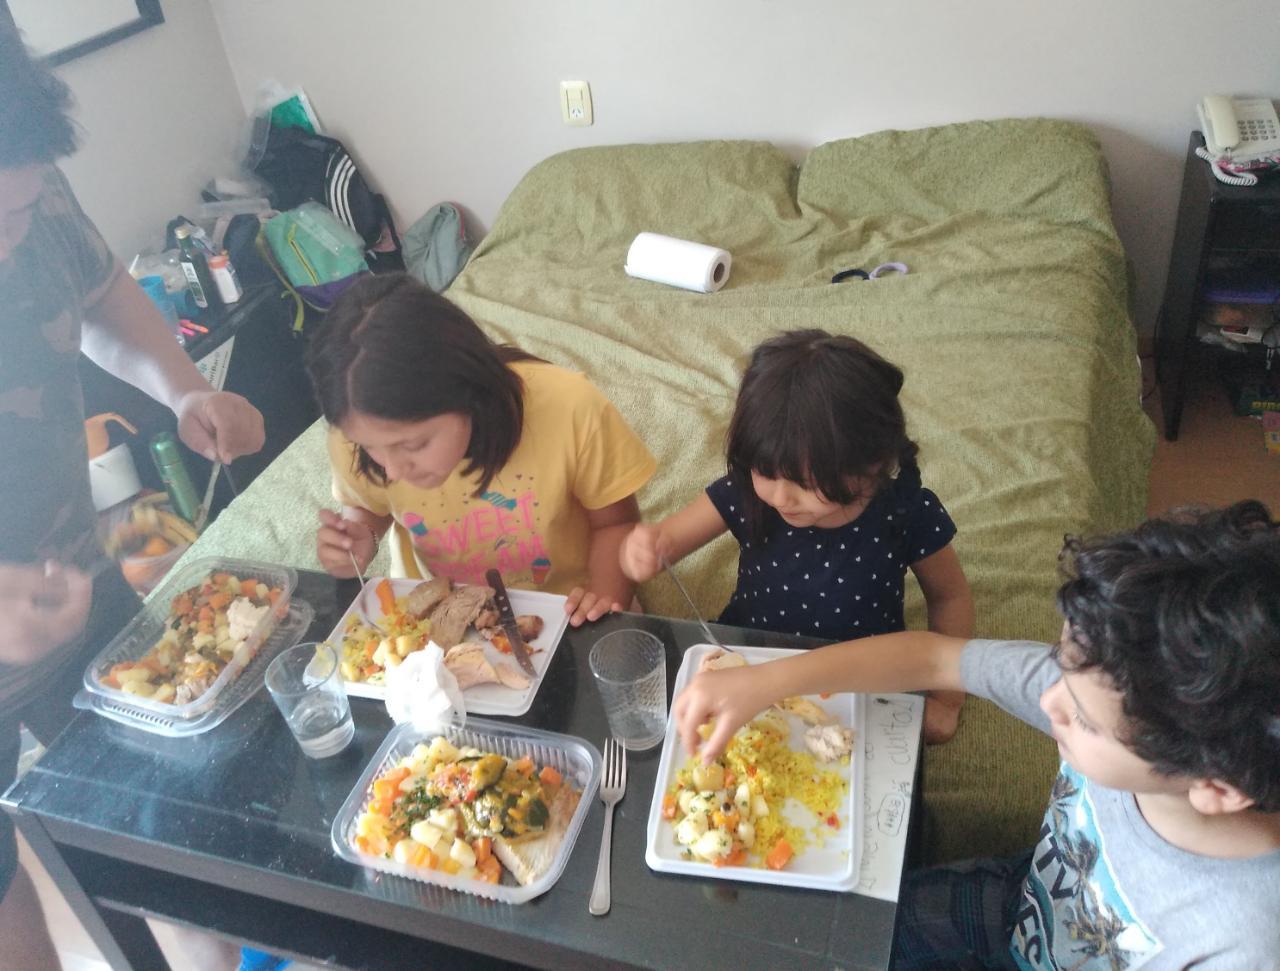 La odisea de regresar a casa y el encuentro más esperado de una familia tucumana